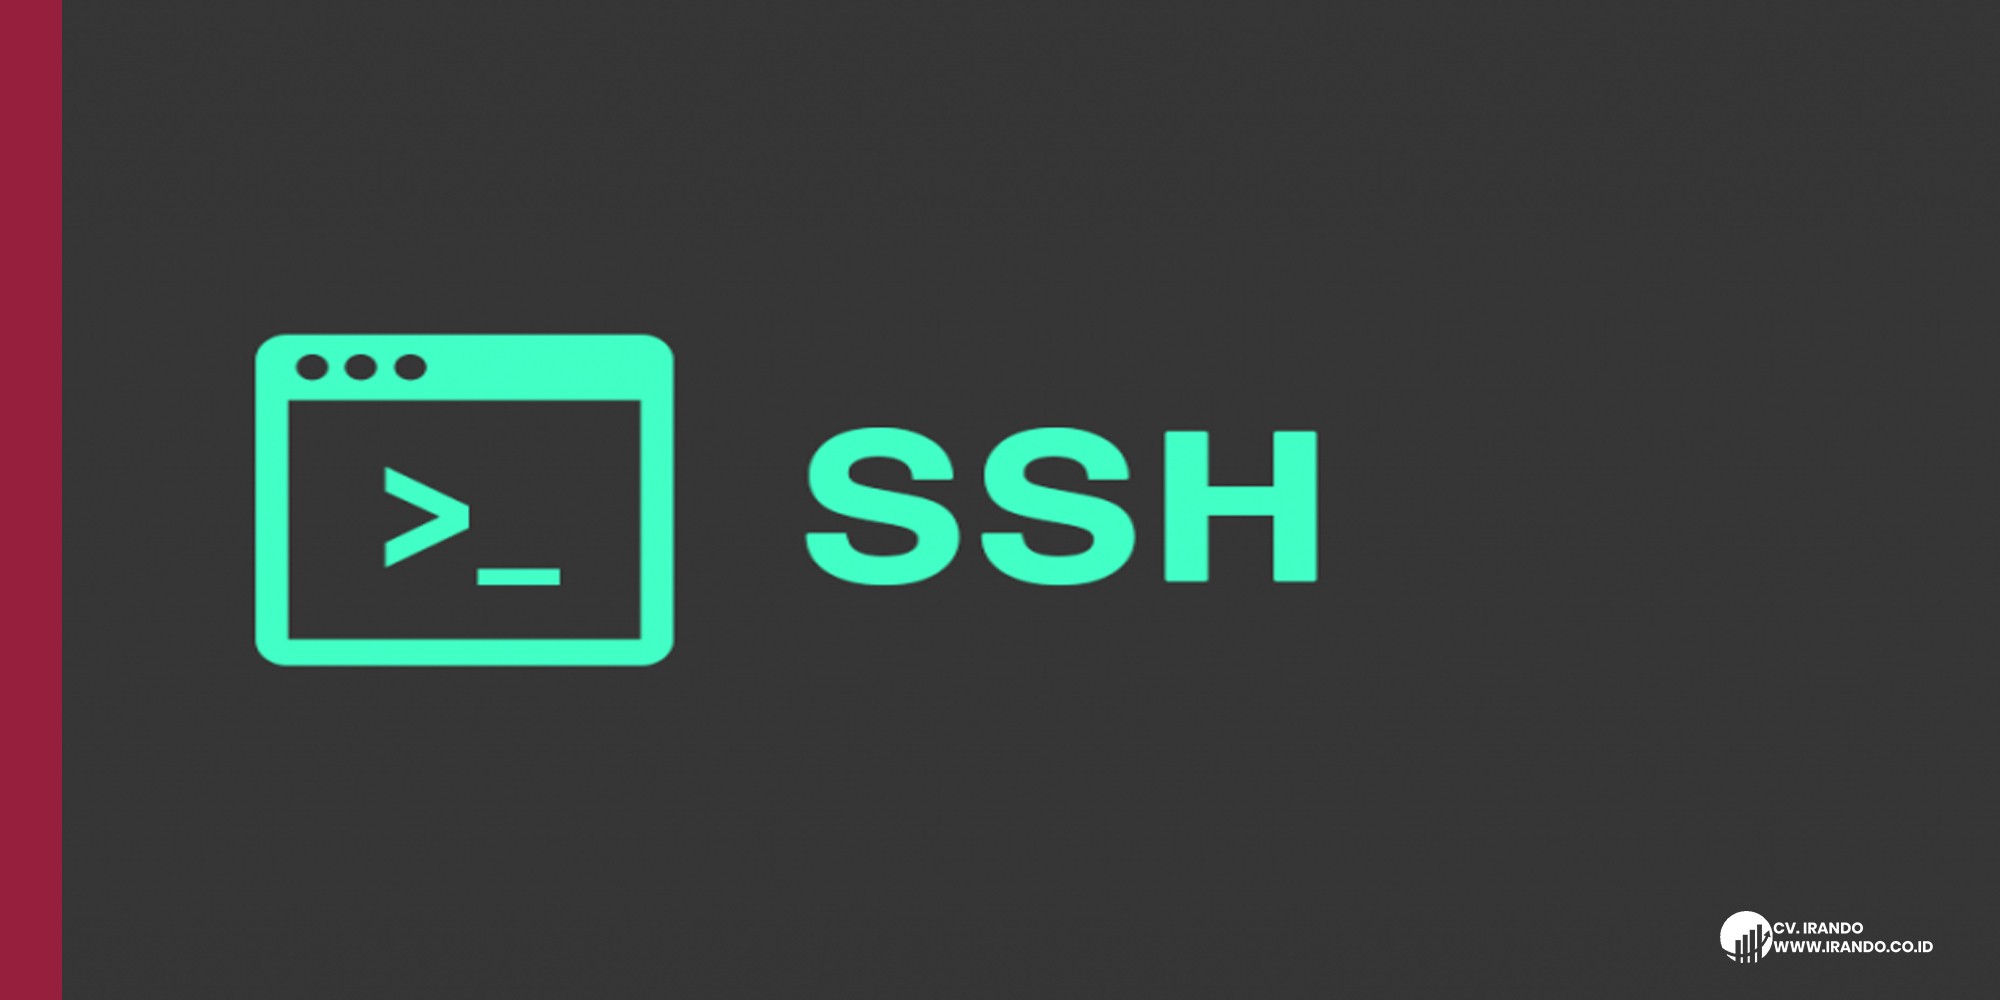 SSH - Terminal Commands Vol 1